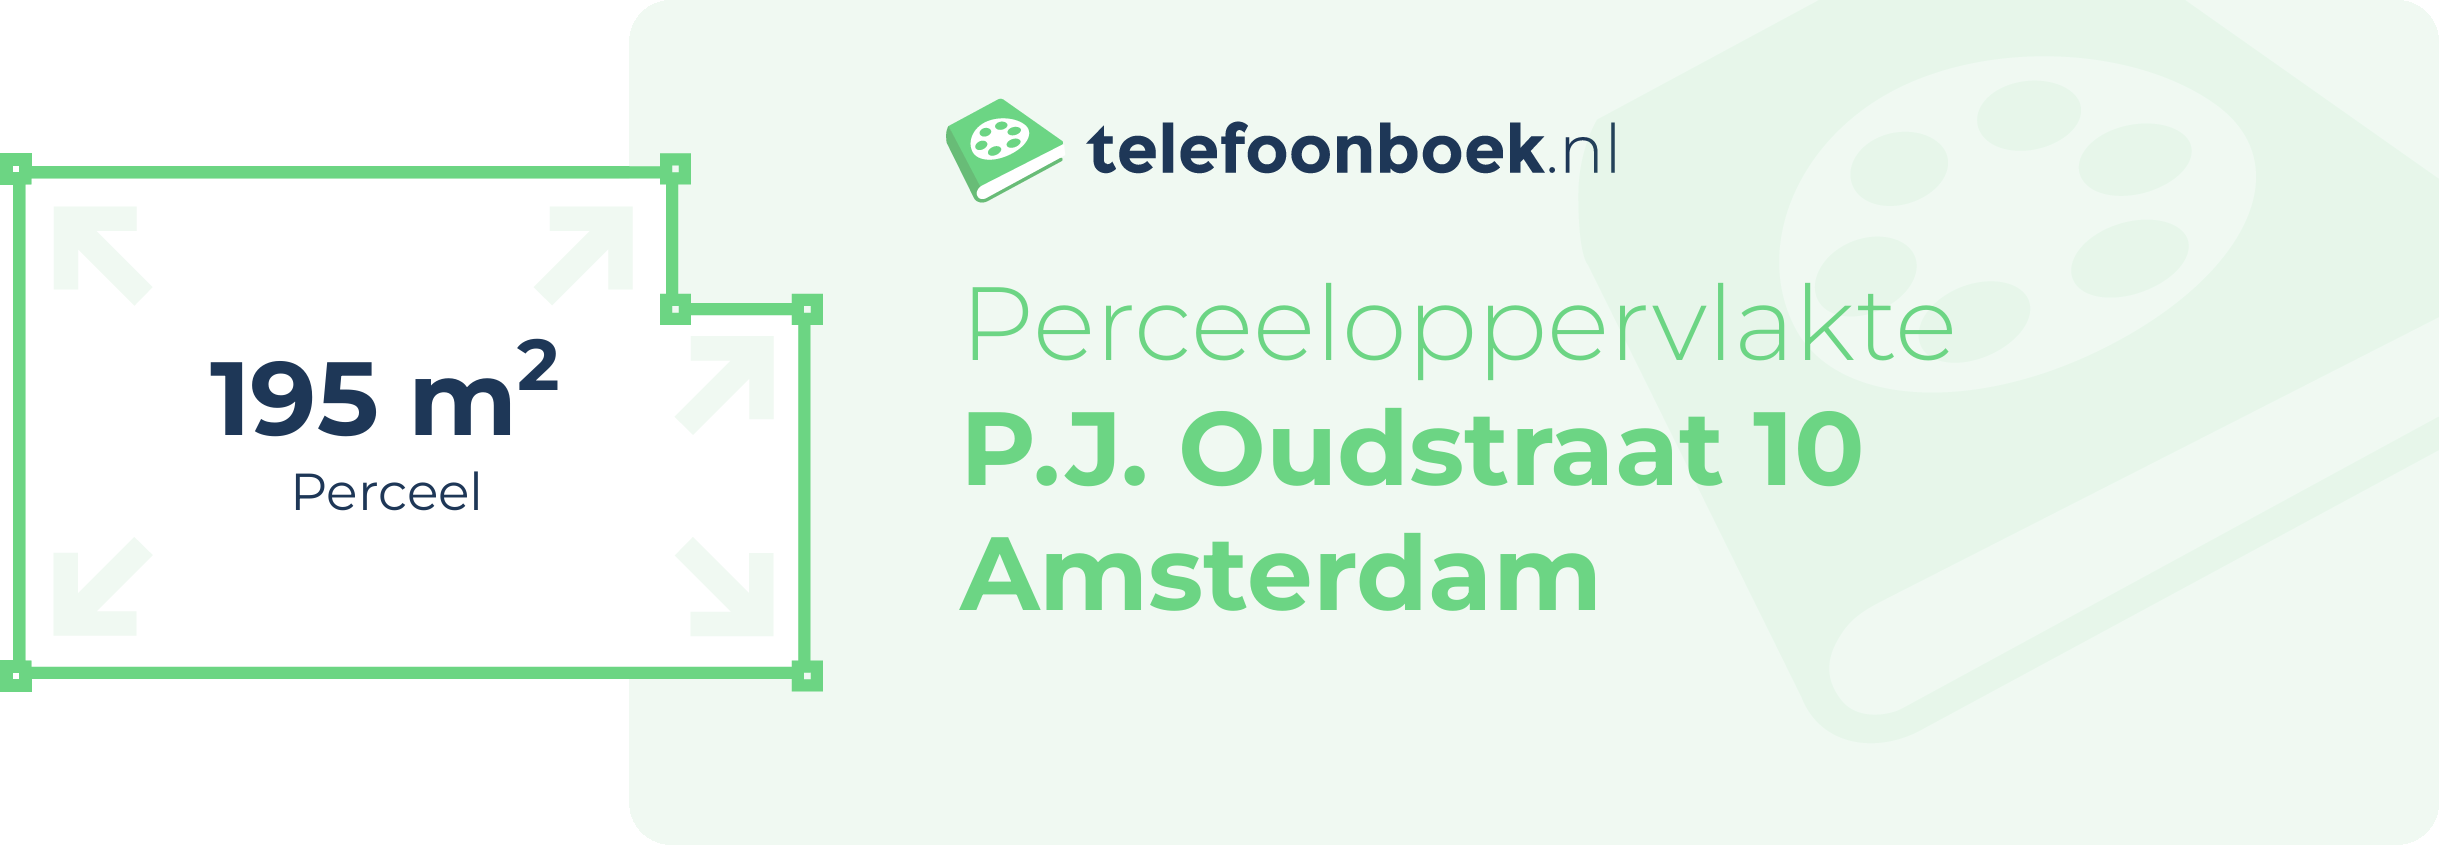 Perceeloppervlakte P.J. Oudstraat 10 Amsterdam